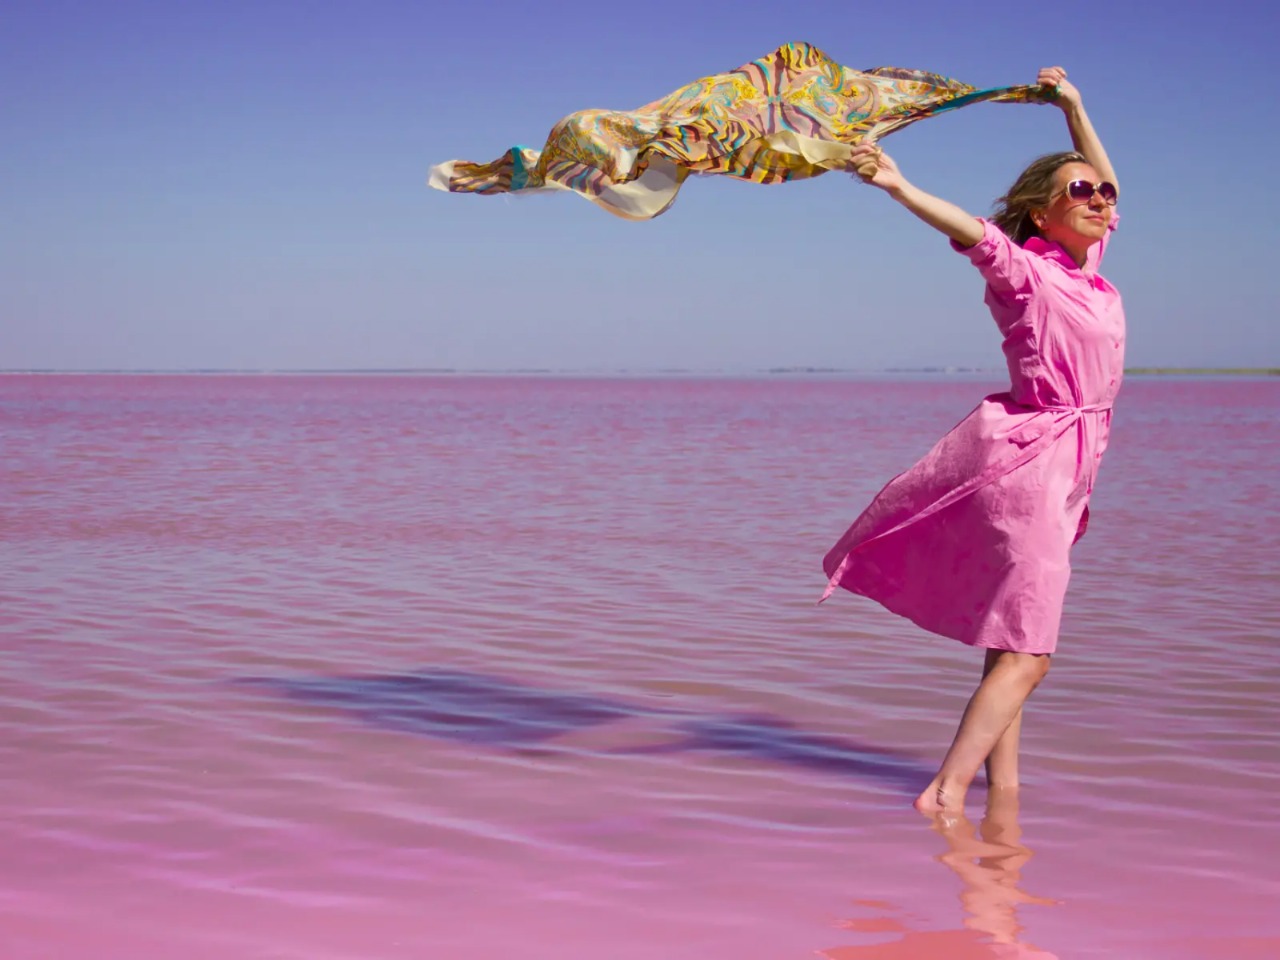 Фототур на розовое озеро Сасык-Сиваш | Цена 8550₽, отзывы, описание экскурсии